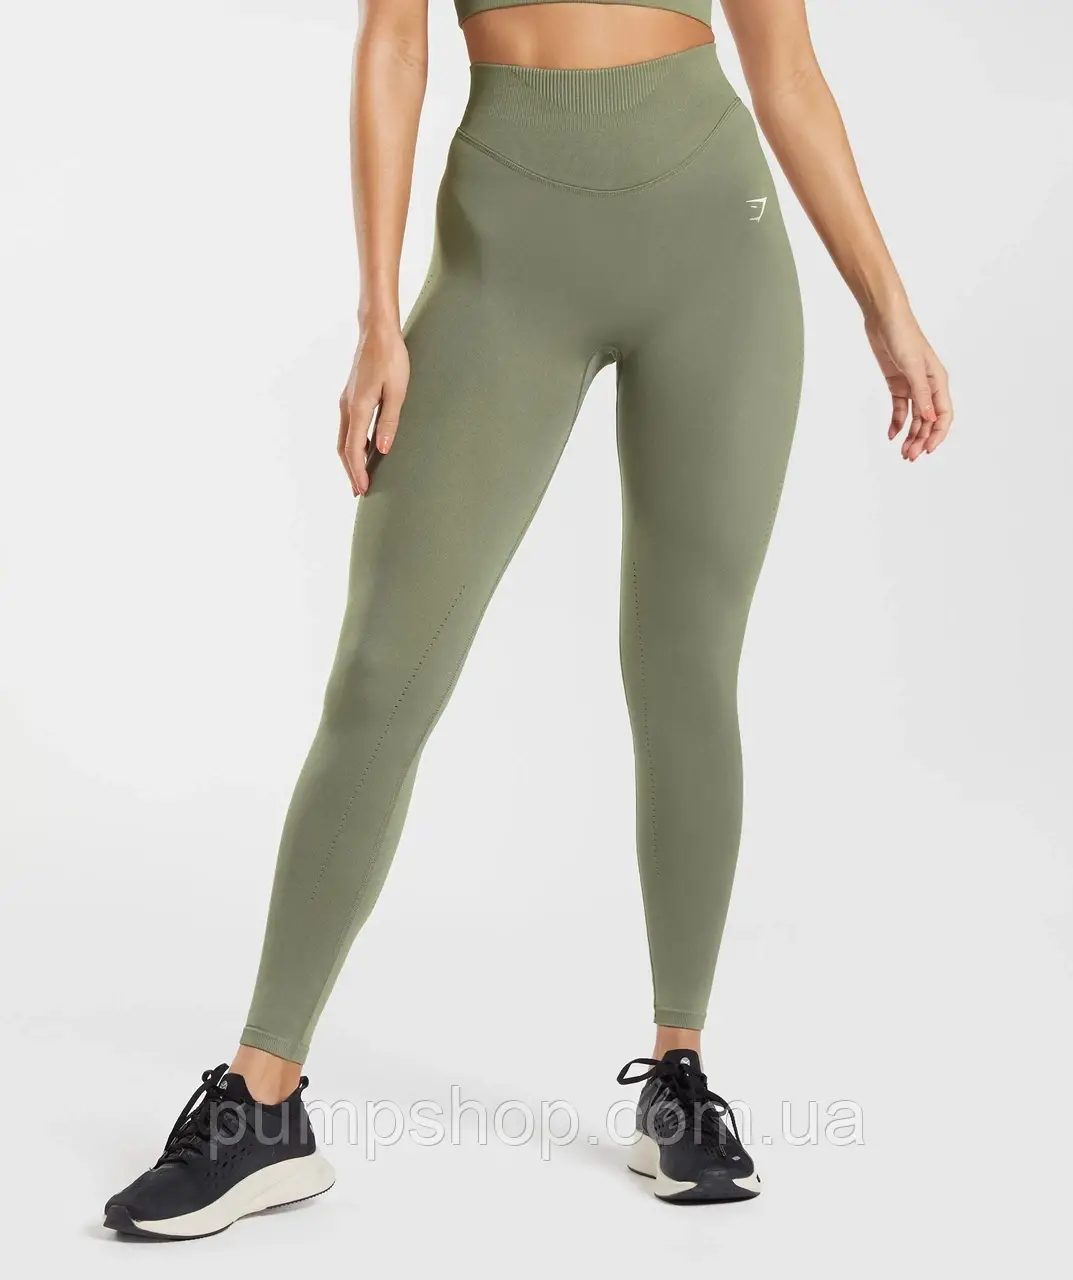 Жіночі спортивні легінси Gymshark Sweat Seamless Leggings - Dusty Olive - L, XL